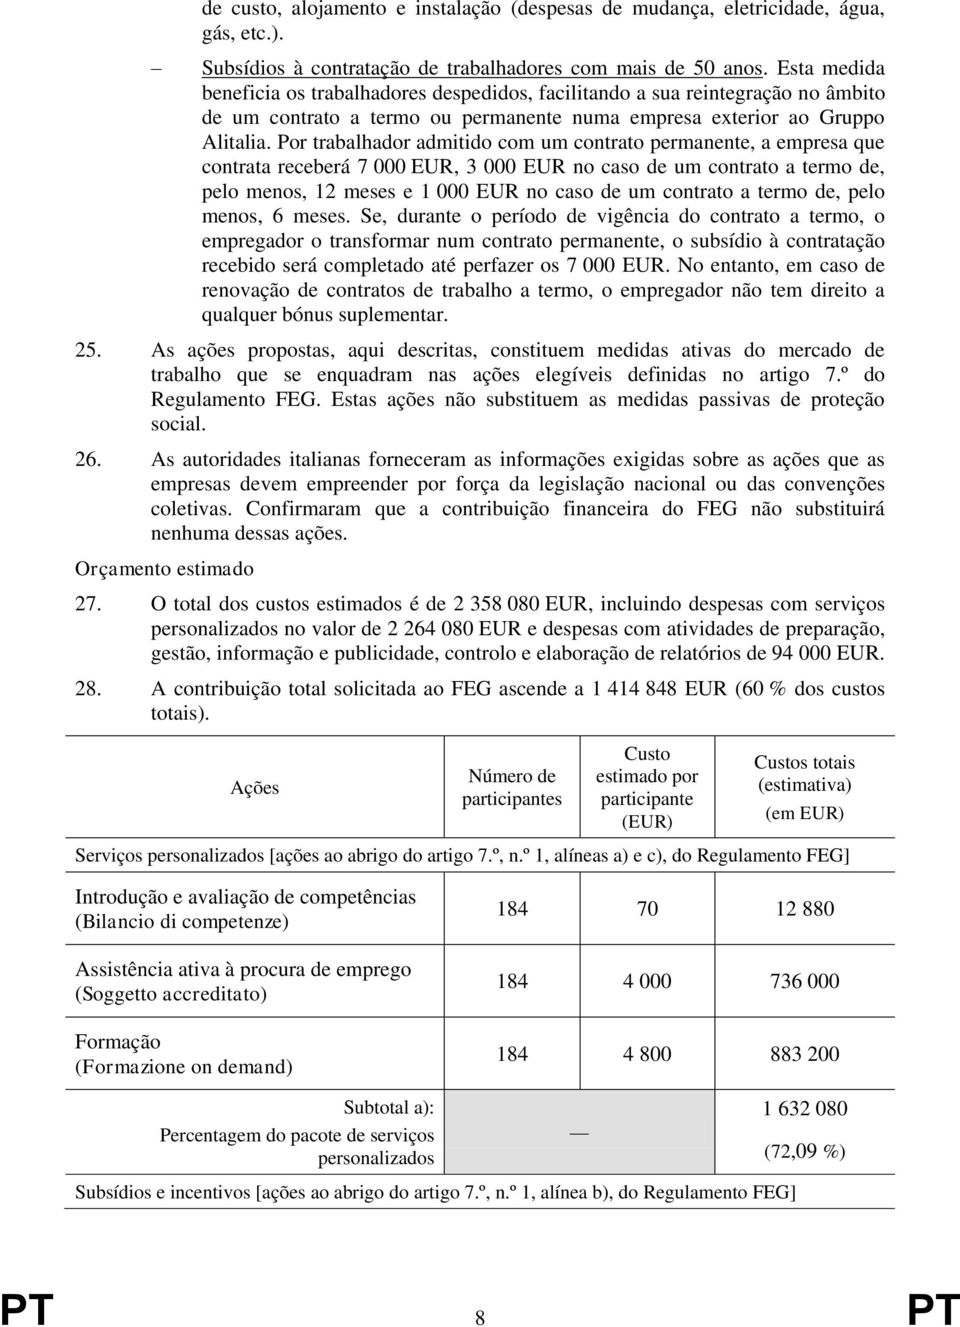 Por trabalhador admitido com um contrato permanente, a empresa que contrata receberá 7 000 EUR, 3 000 EUR no caso de um contrato a termo de, pelo menos, 12 meses e 1 000 EUR no caso de um contrato a